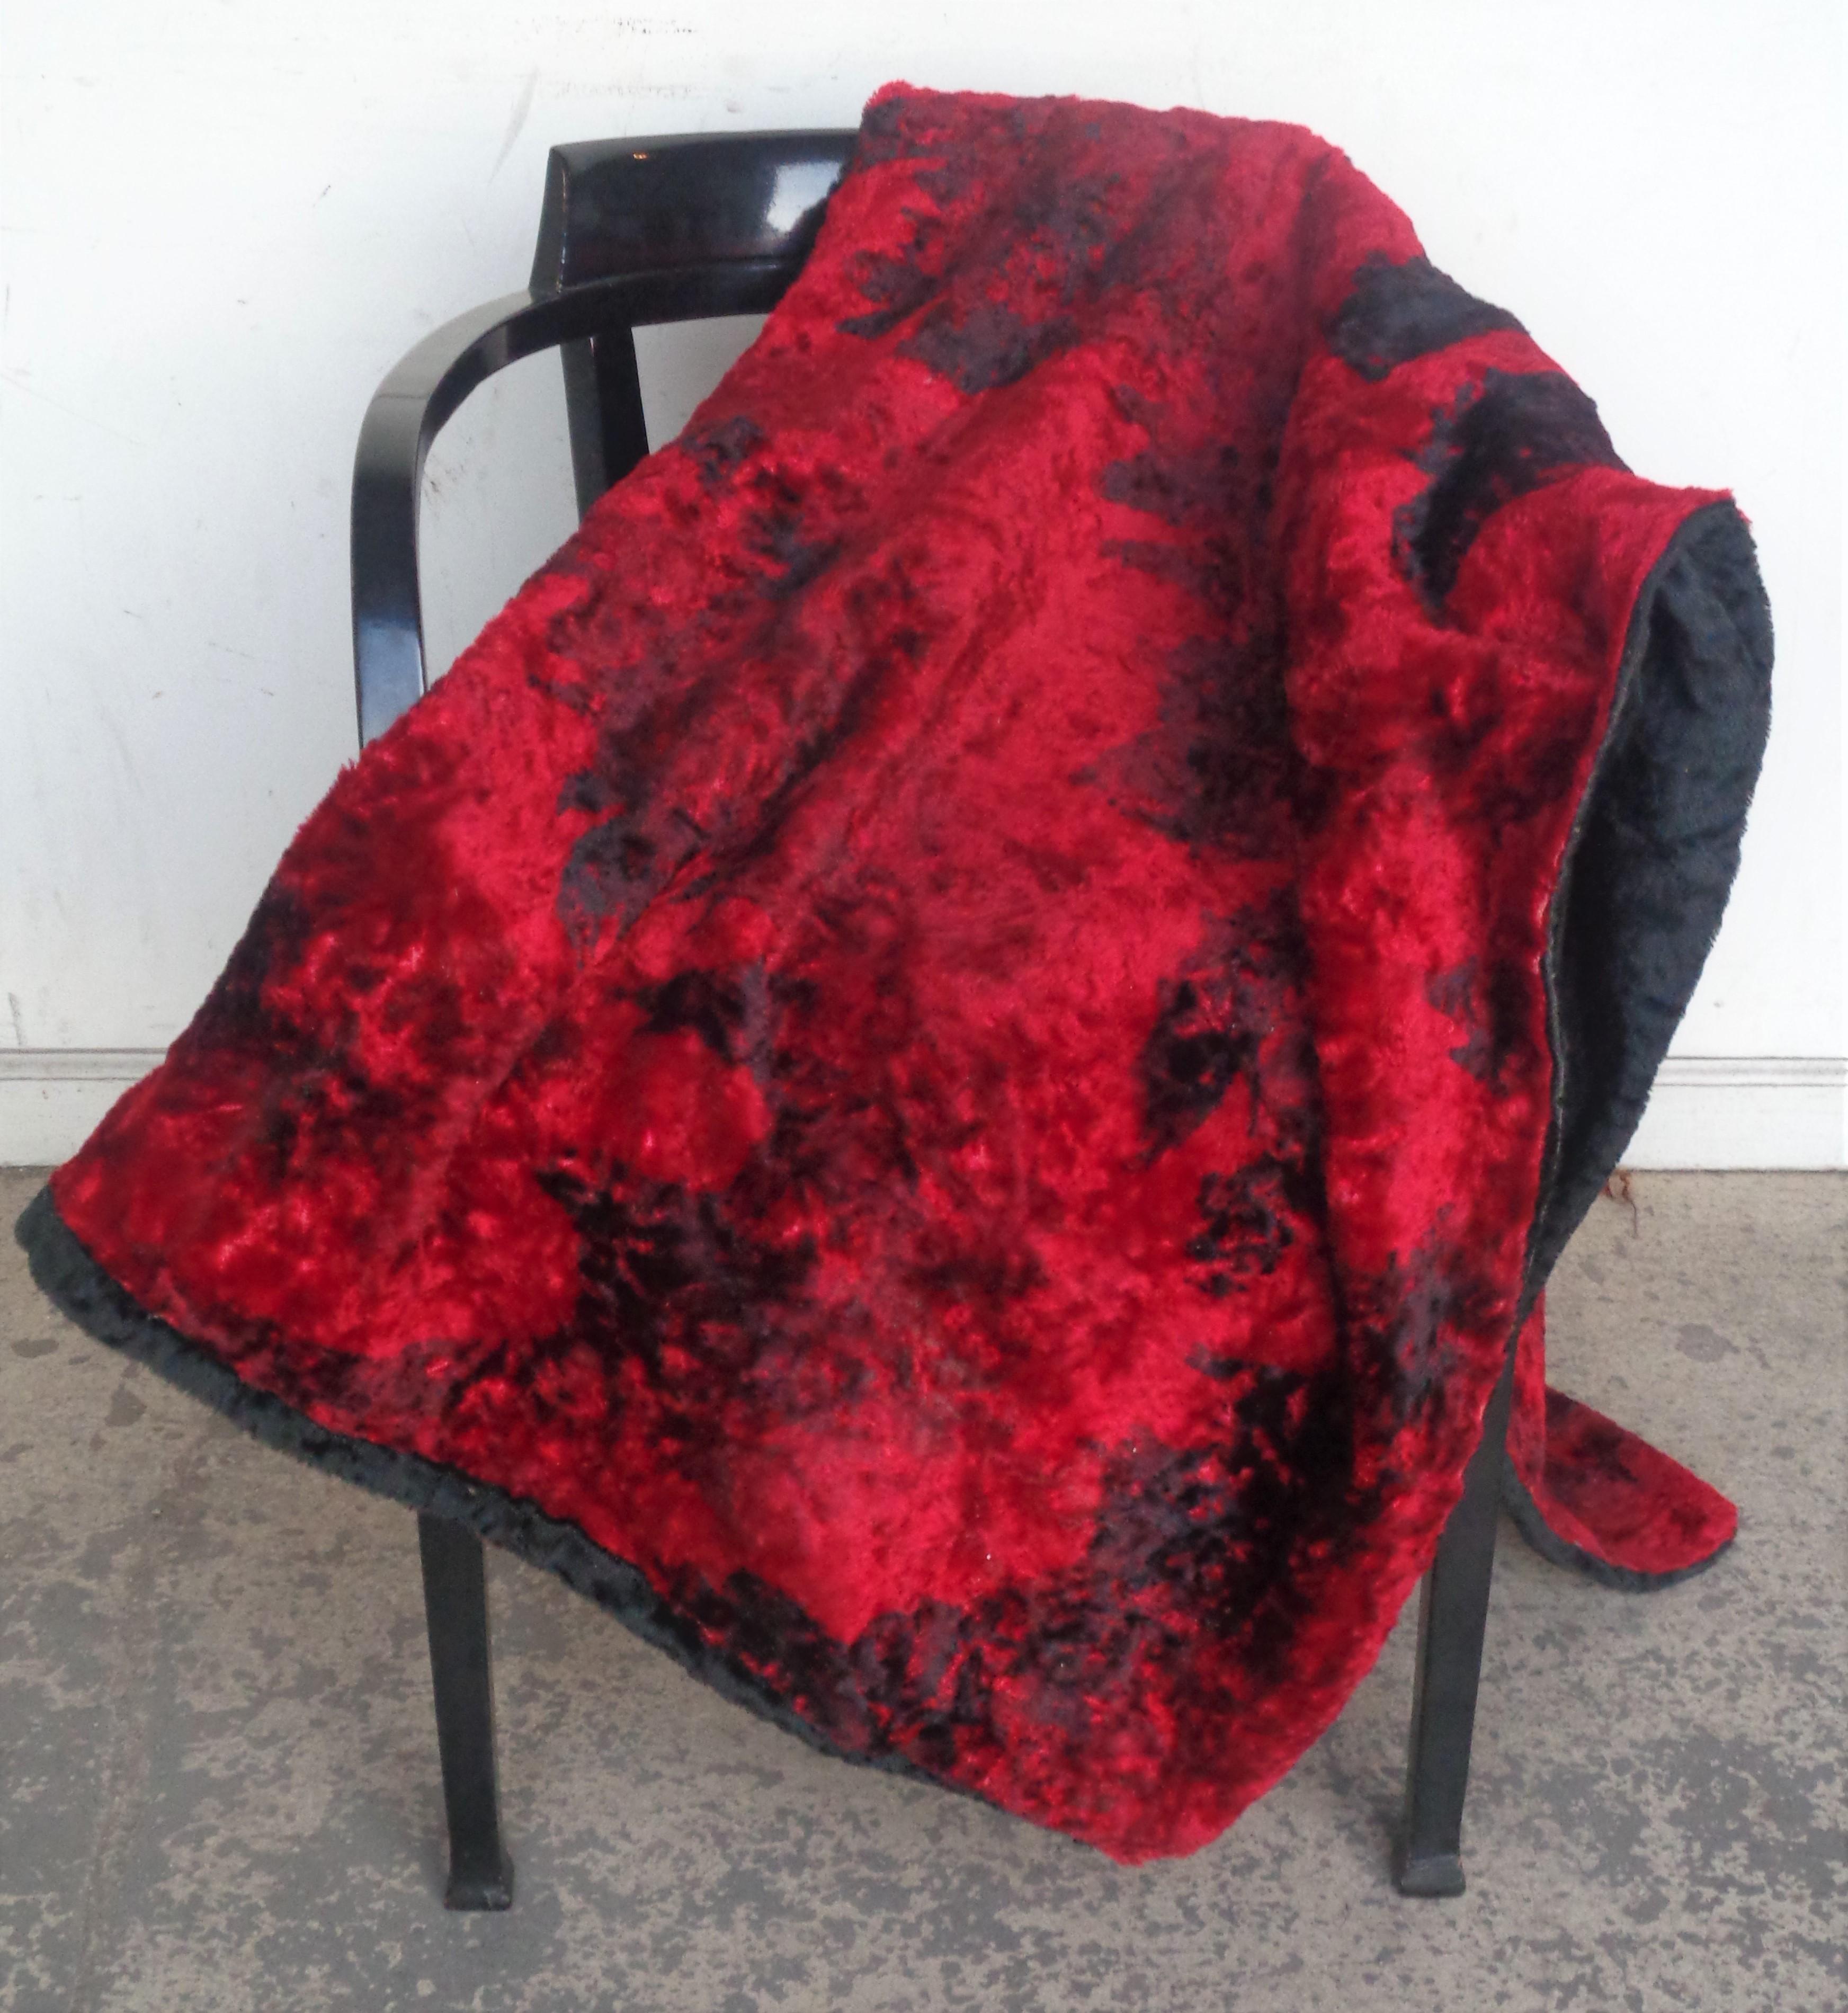 Couverture jetable en laine mohair pour canapé, chaise et meuble, en forme de tache abstraite rouge et noire, cousue à la main. Le verso est noir. Laine douce, épaisse et souple, d'une belle brillance. Mesure 64 pouces par 48 pouces et environ 1